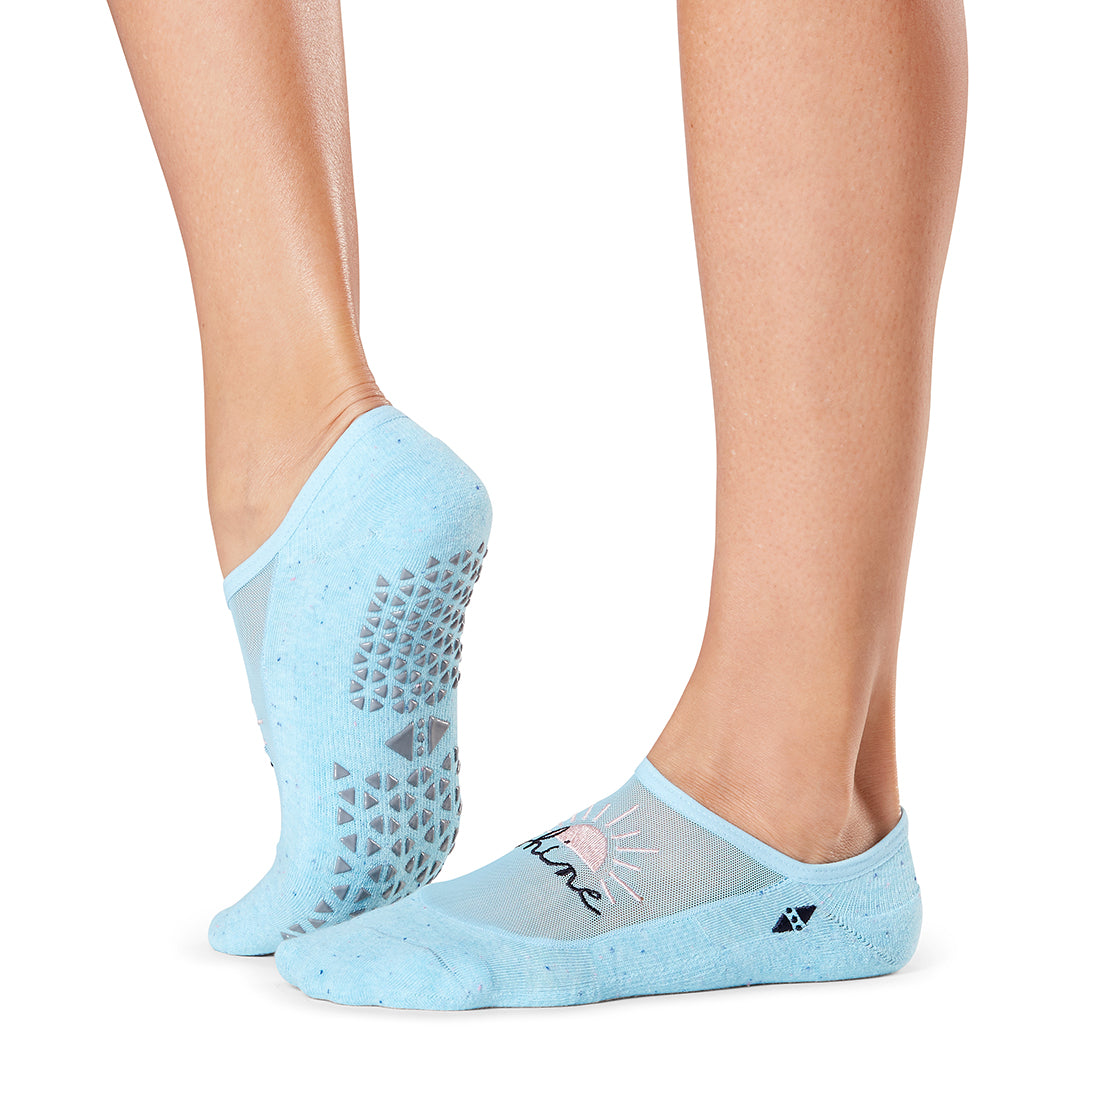 Tavi Maddie Grip Socks at YogaOutlet.com –